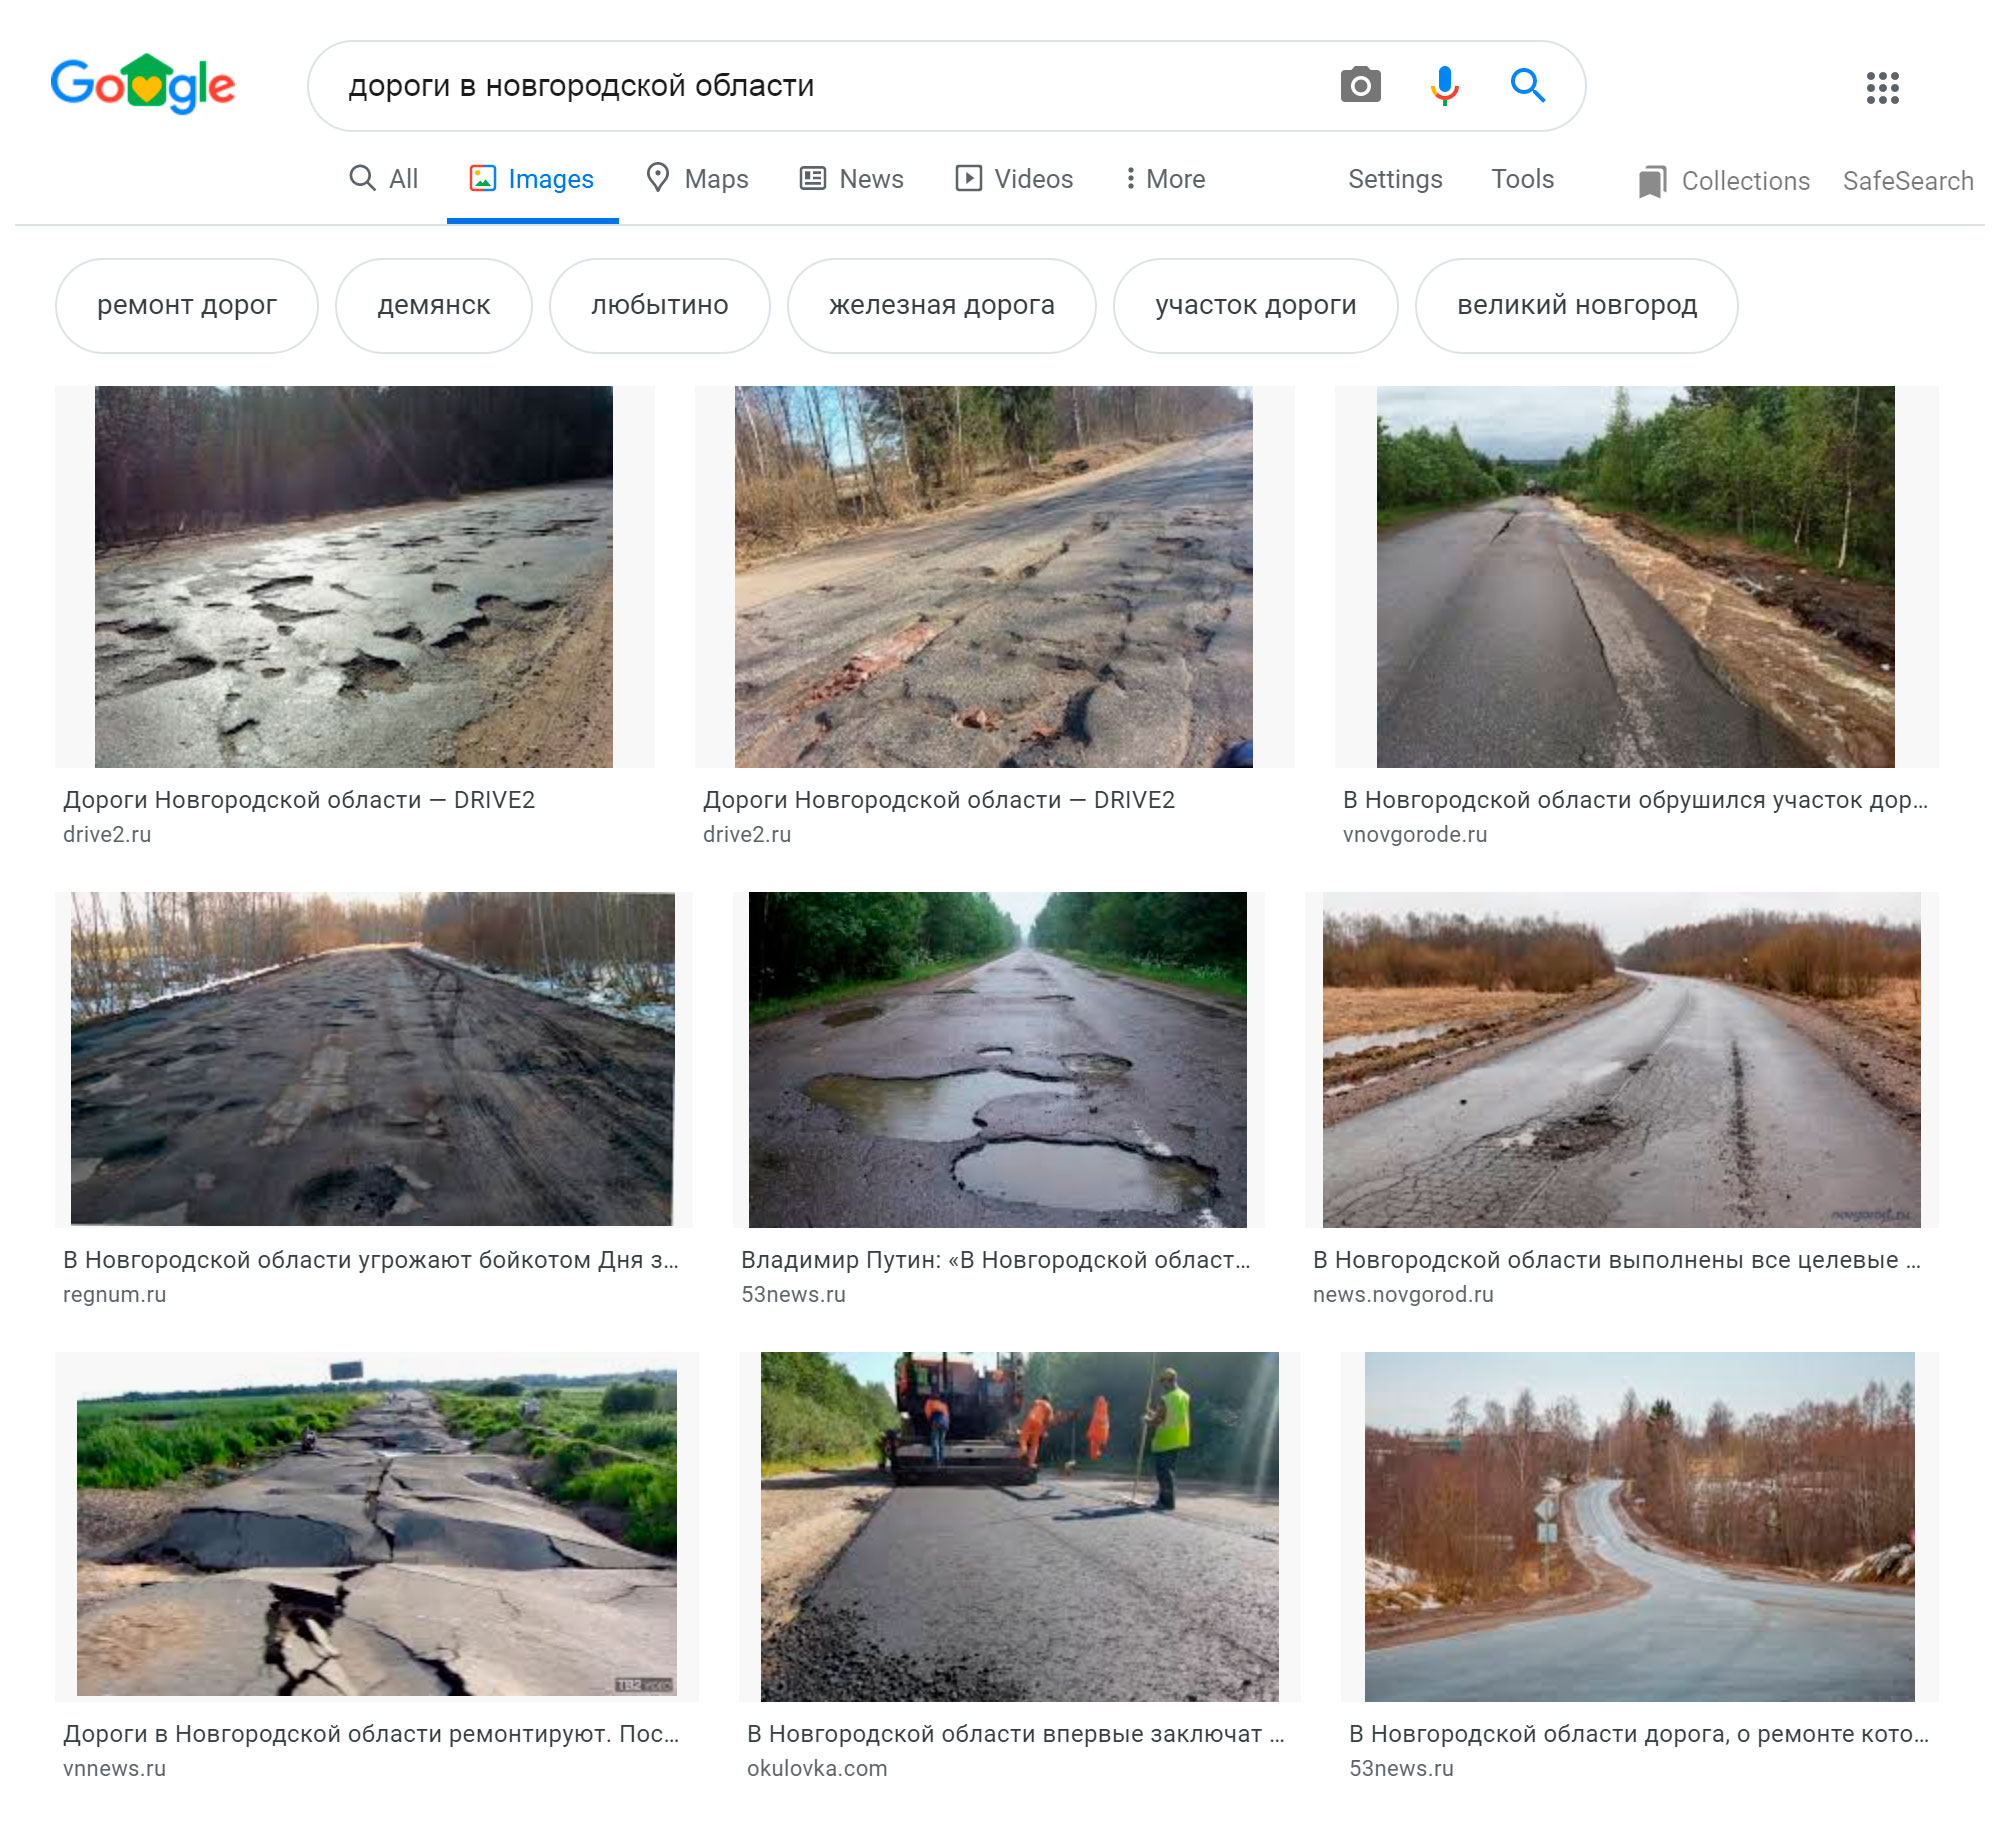 Еще несколько лет назад дороги в Новгородской области были в ужасном состоянии. Сейчас ситуация гораздо лучше